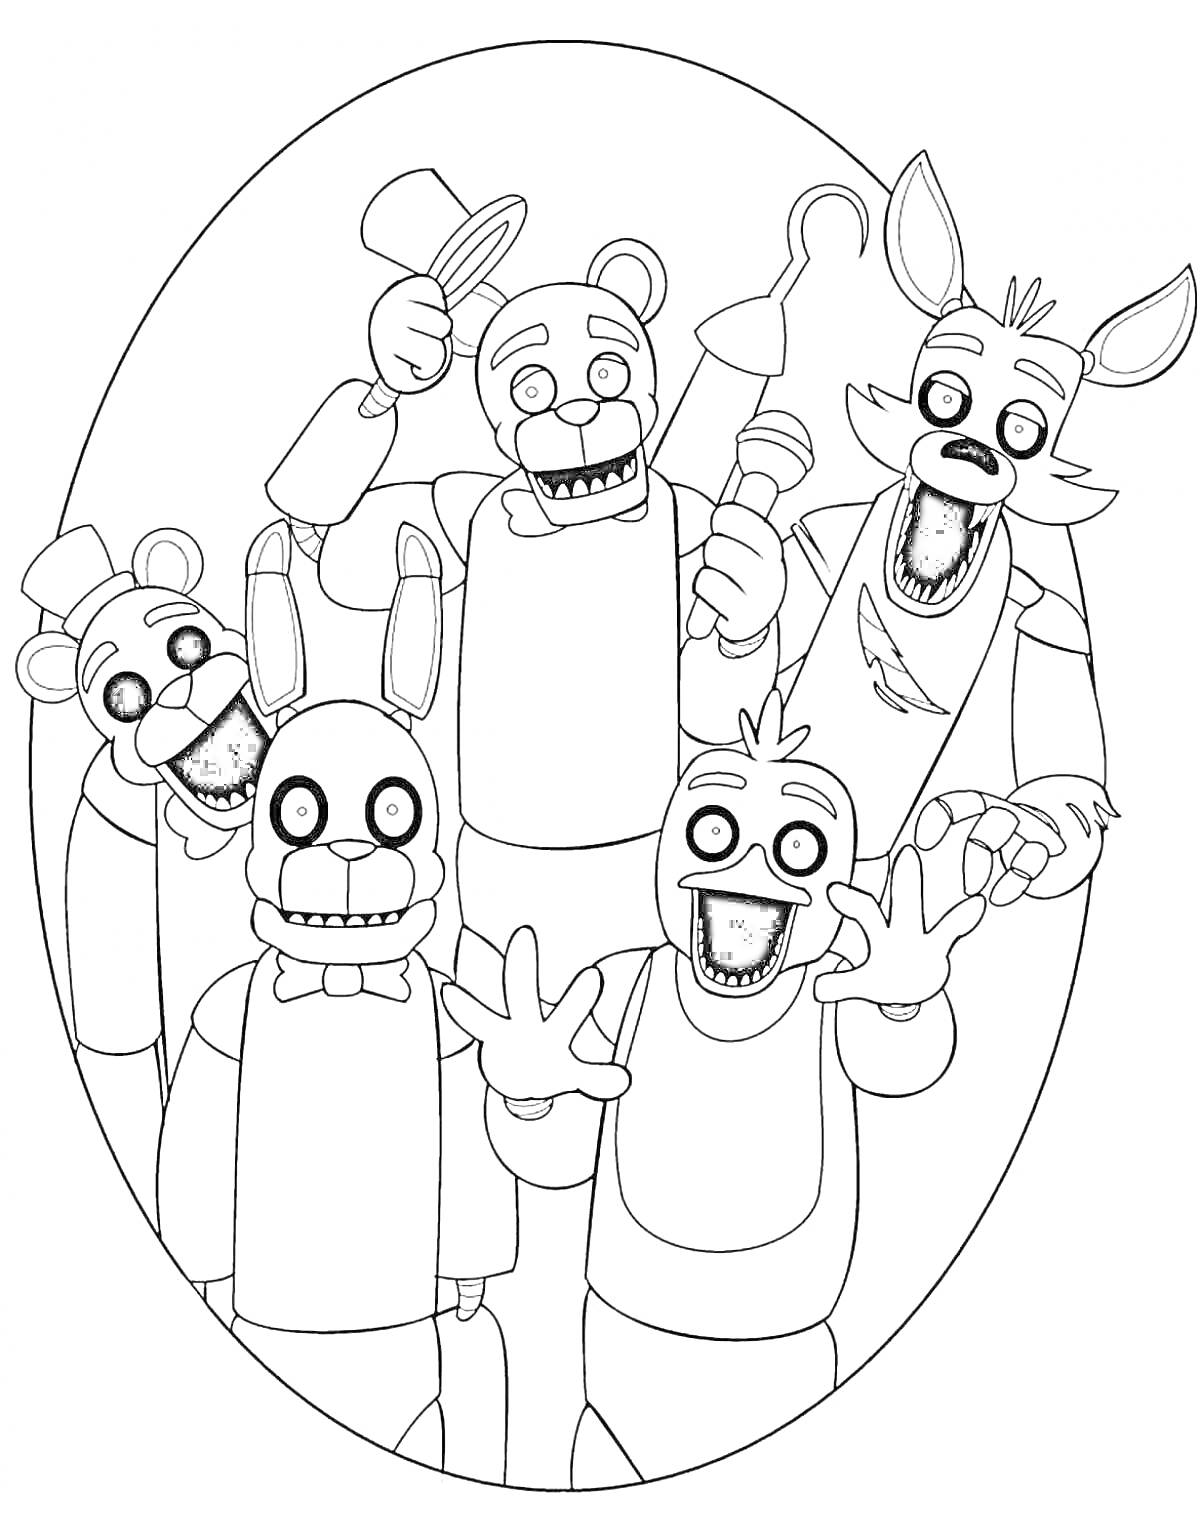 Пять аниматроников в овальной рамке - Фредди с цилиндром, Бонни с гитарой, Чика с микрофоном, Фокси с пиратским крюком и Мангл с двумя головами.